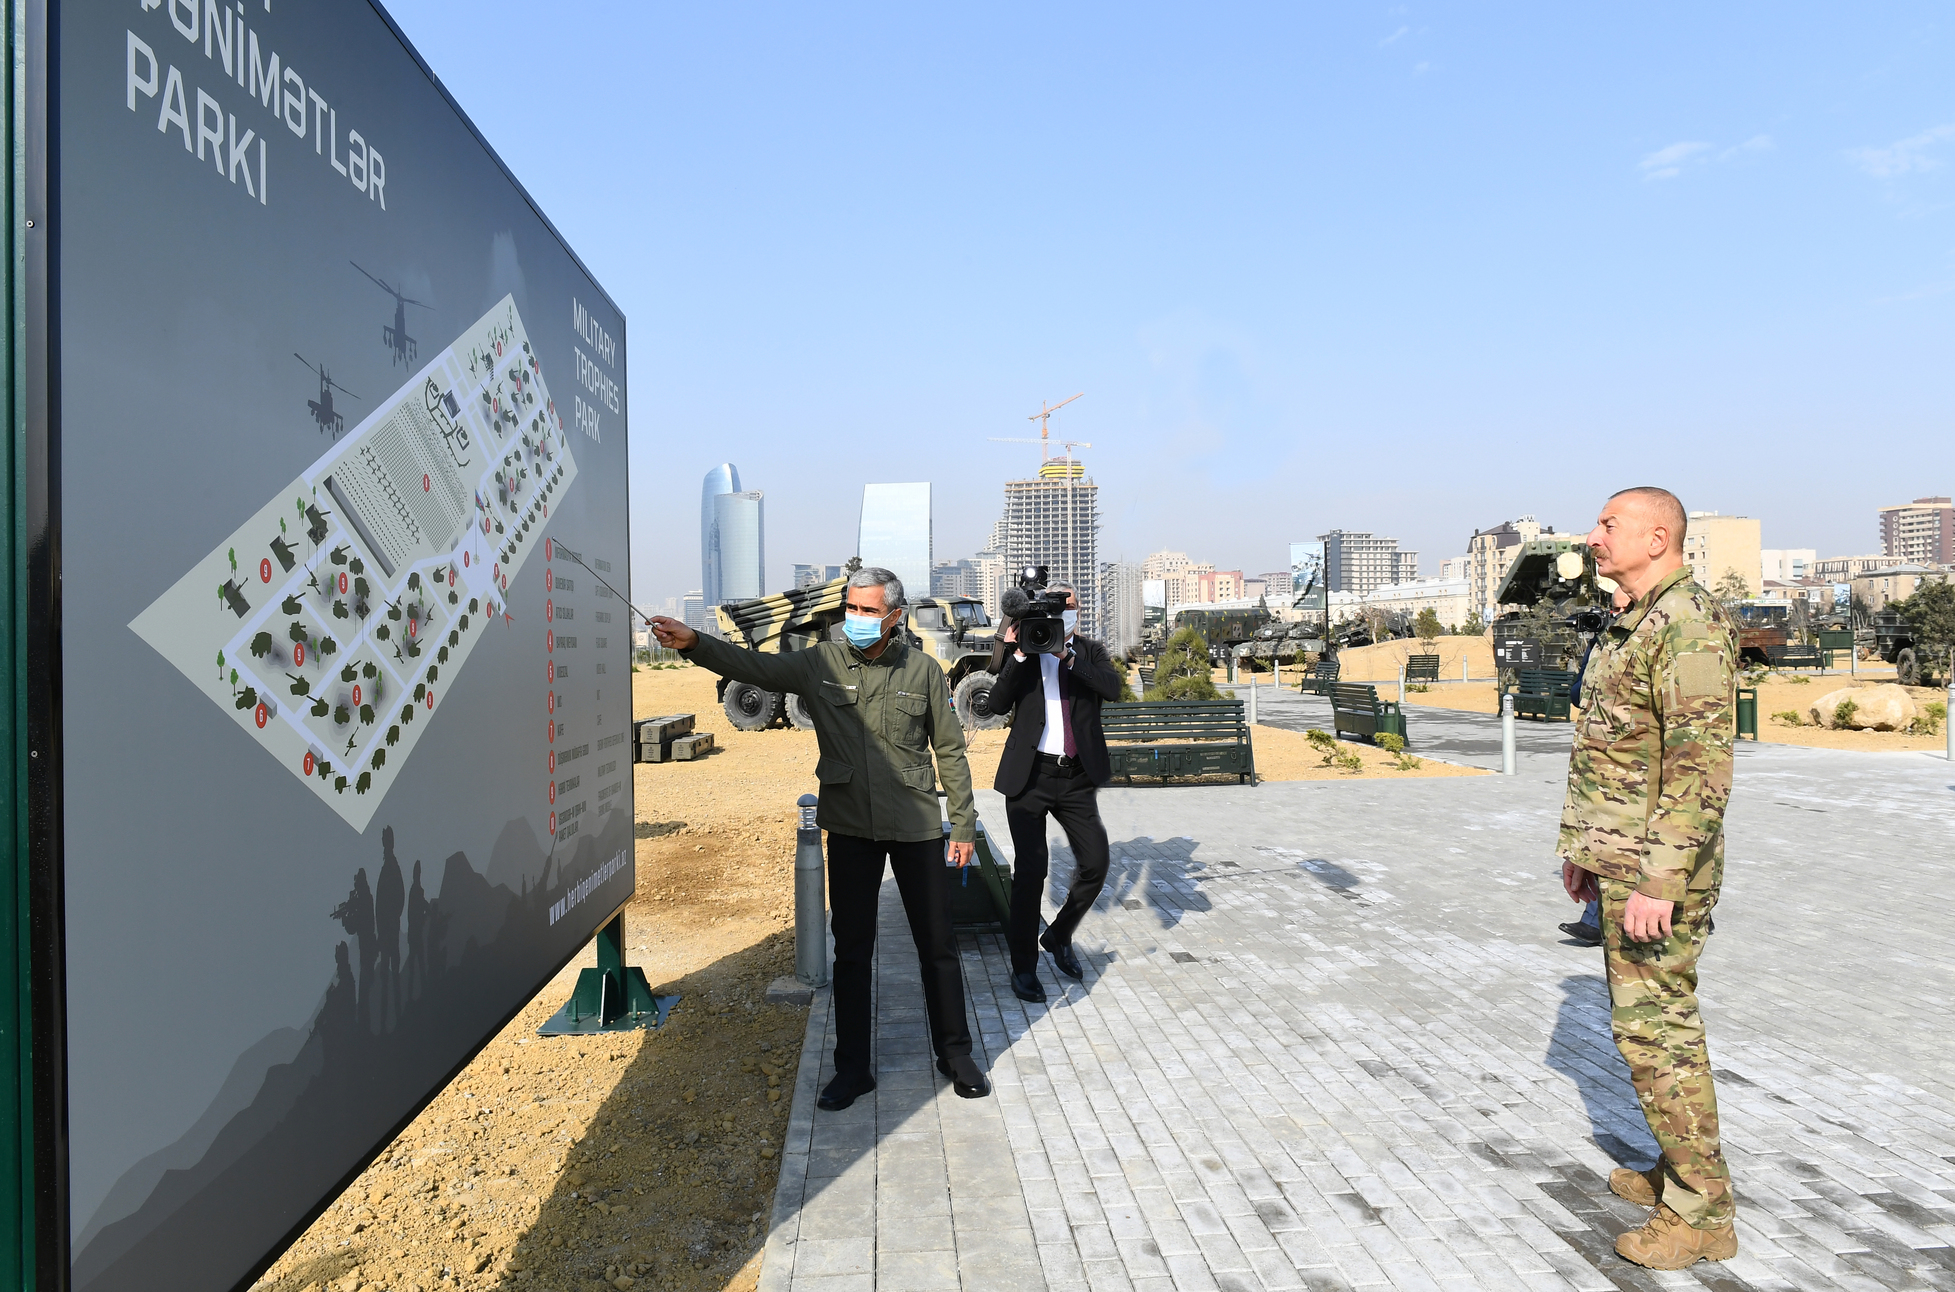 В Баку открылся парк военных трофеев, полученных азербайджанской стороной в ходе военных действий в Нагорном Карабахе. Создание экспозиции на площади 5 га заняло около трех месяцев